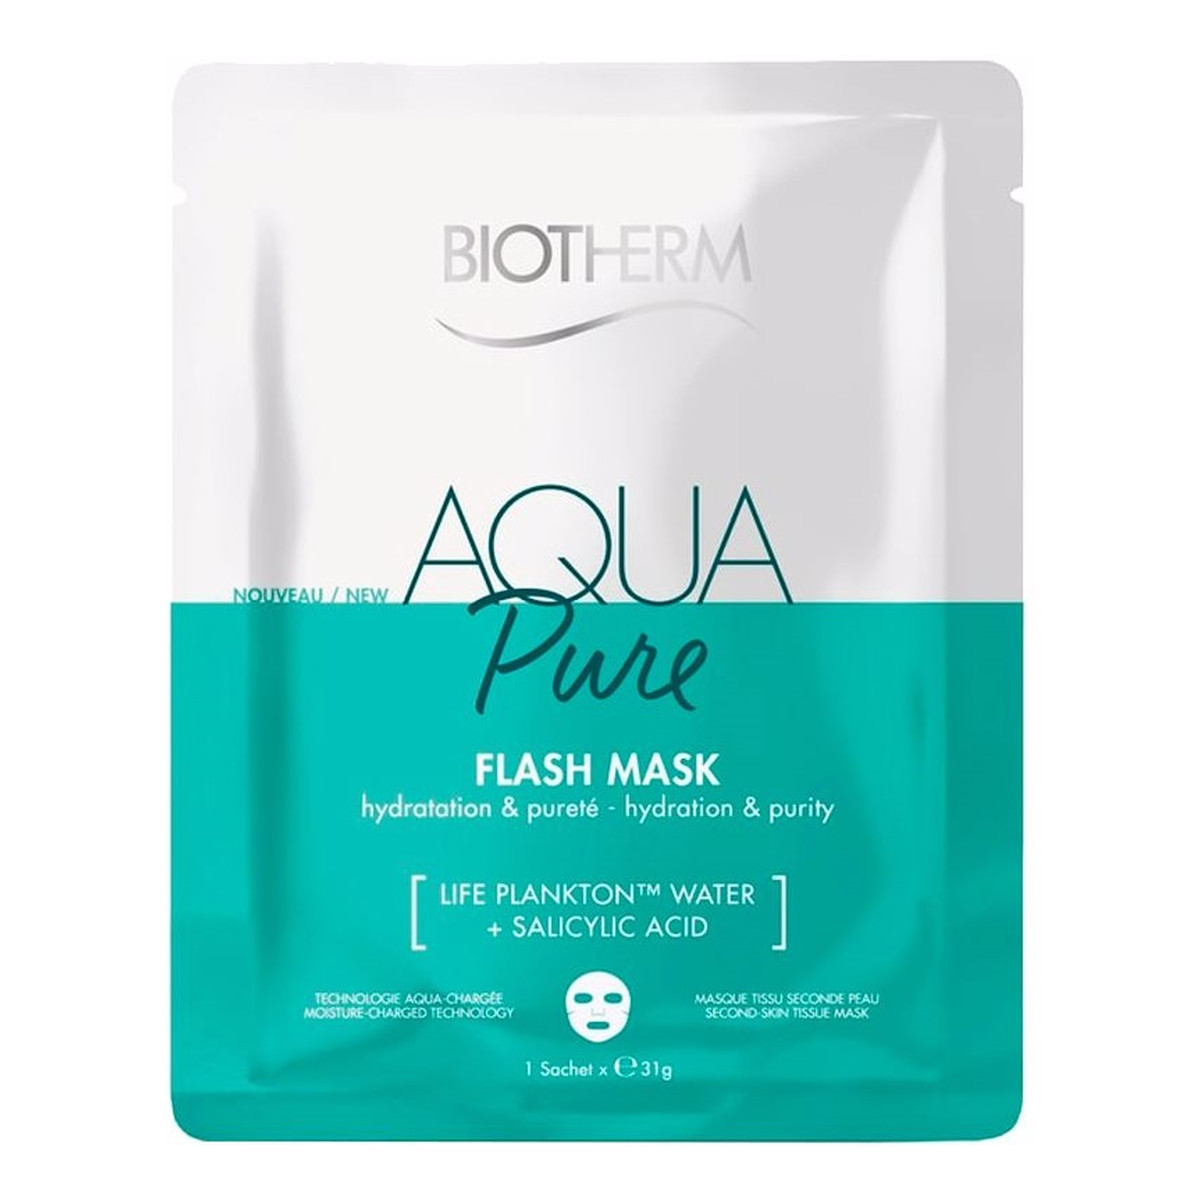 Biotherm Aqua pure flash mask oczyszczająca maseczka w płachcie do twarzy 31g